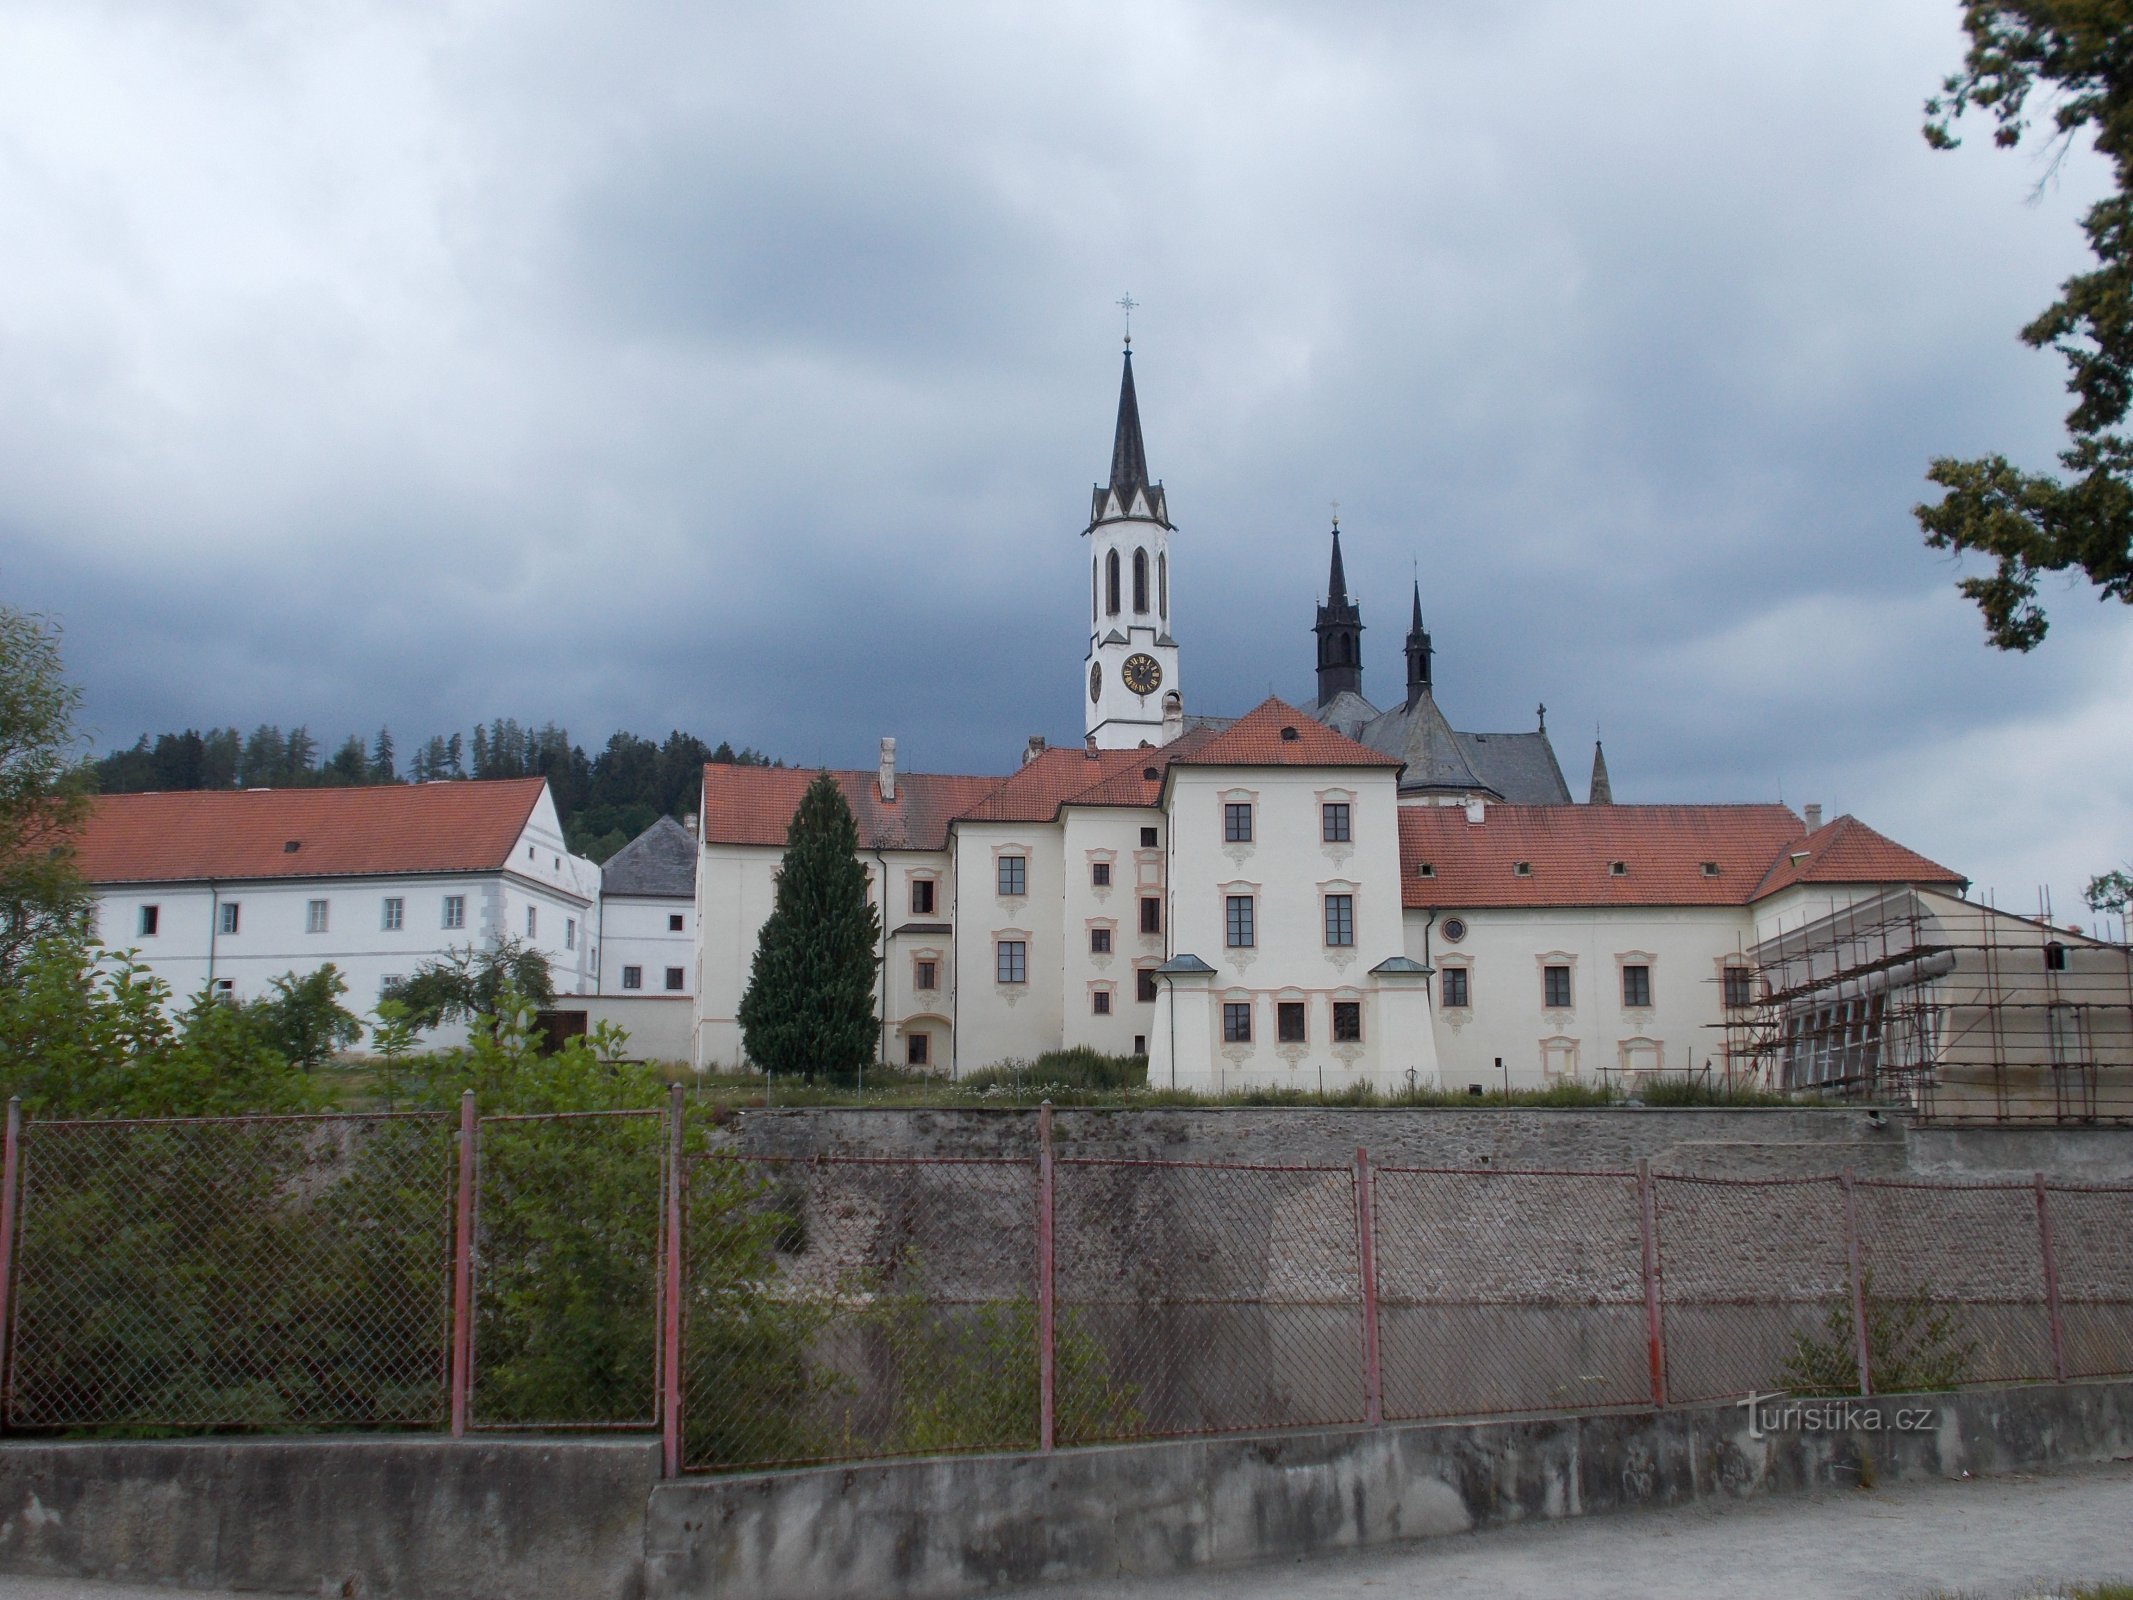 Μοναστήρι Vyšší Brod